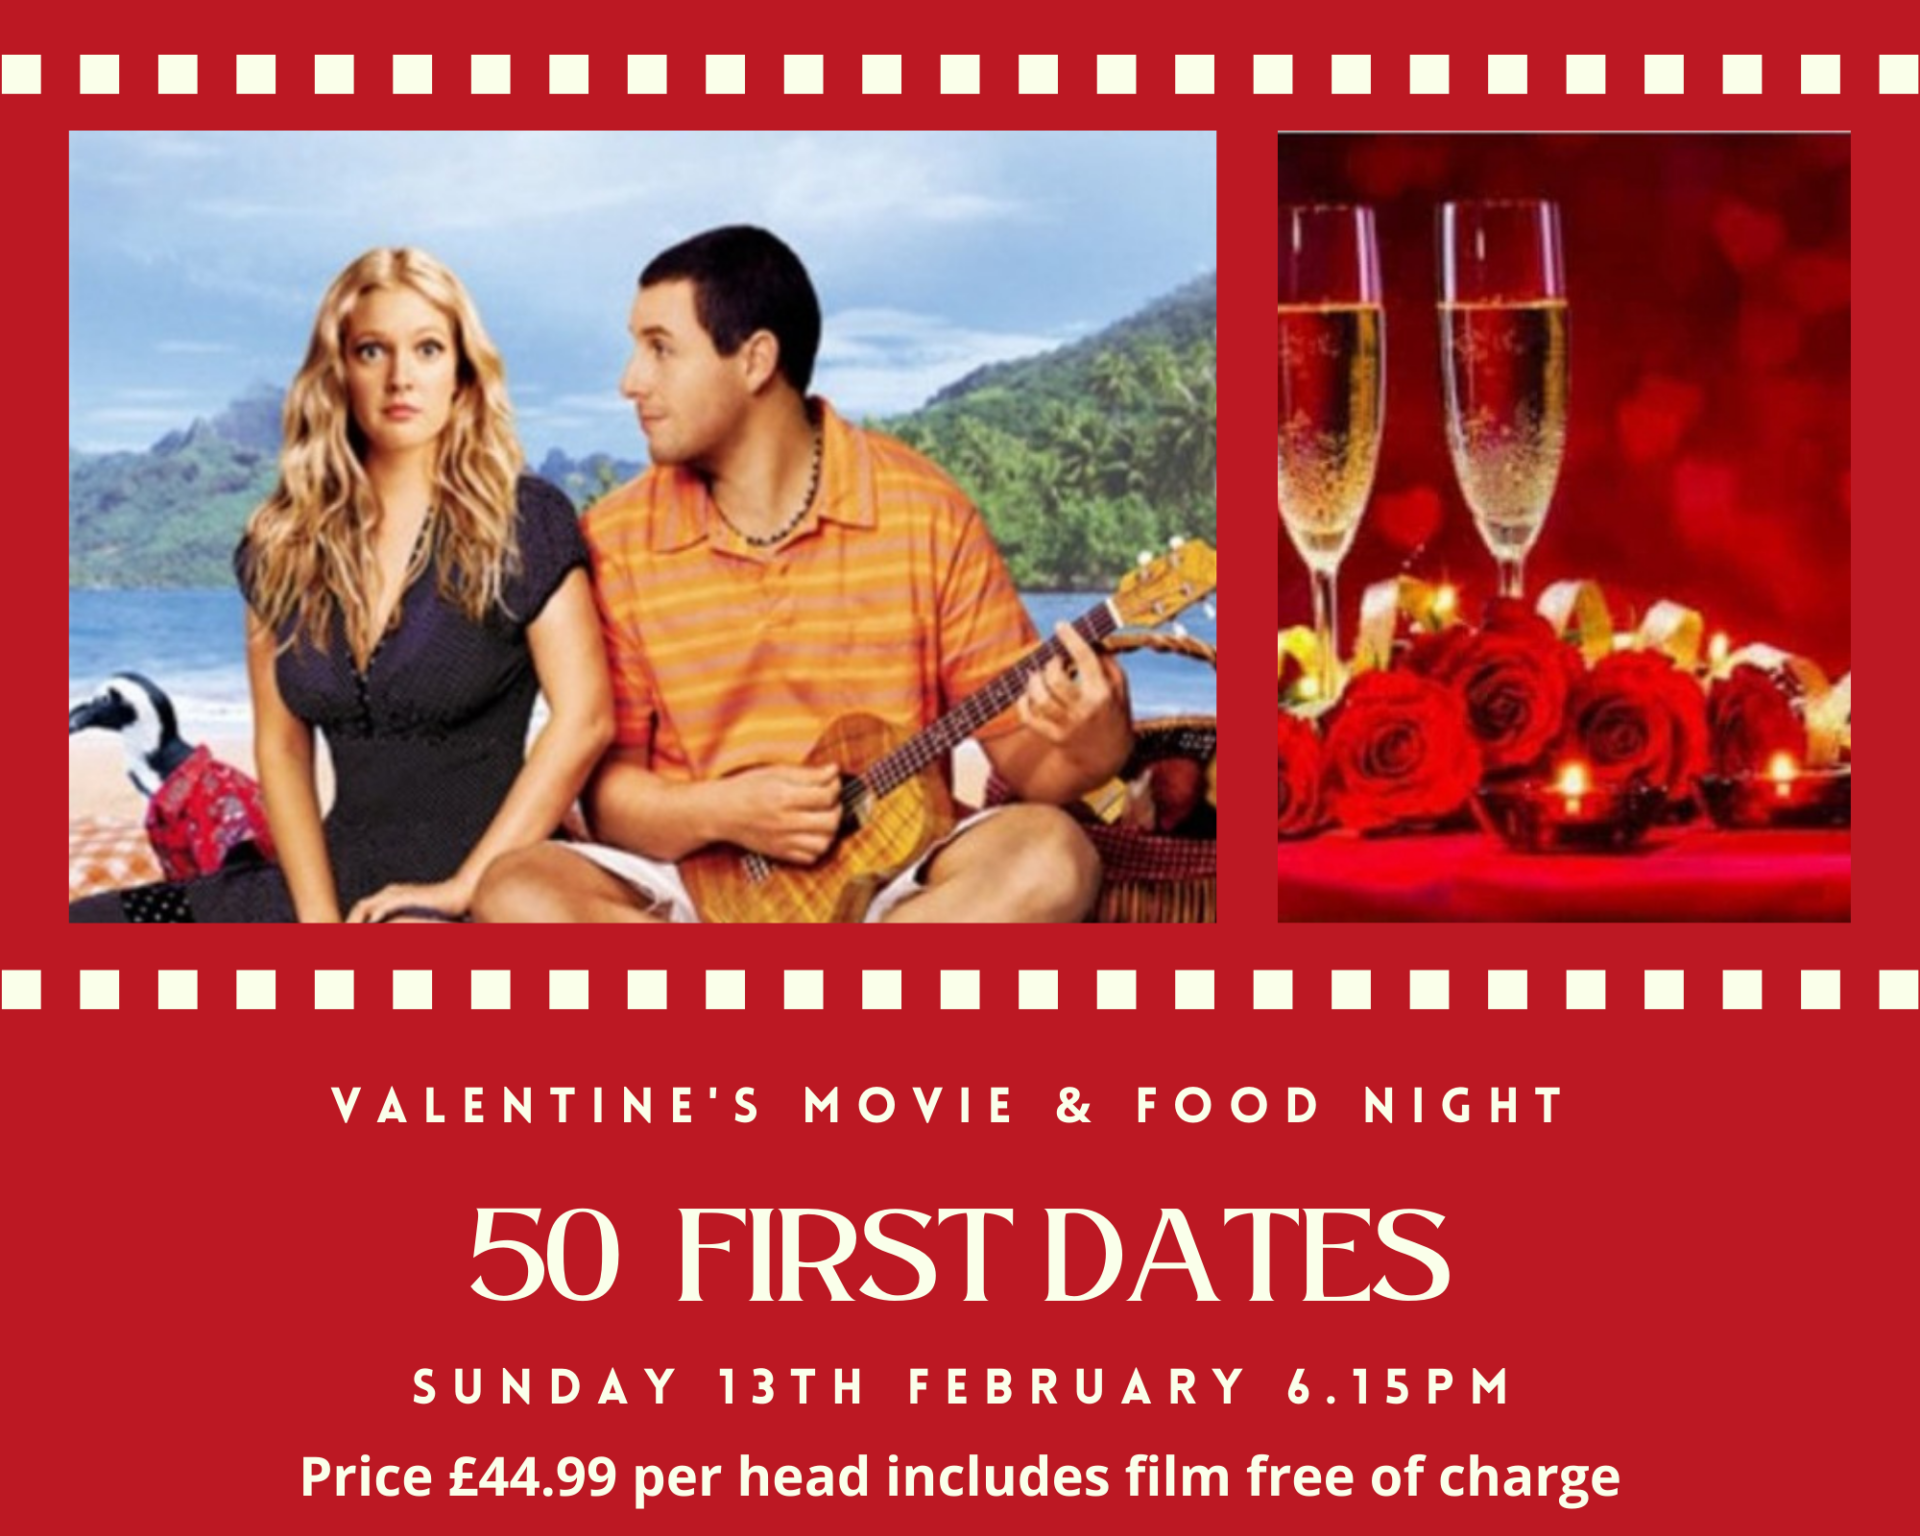 Valentines Movie Event - 50 First Dates